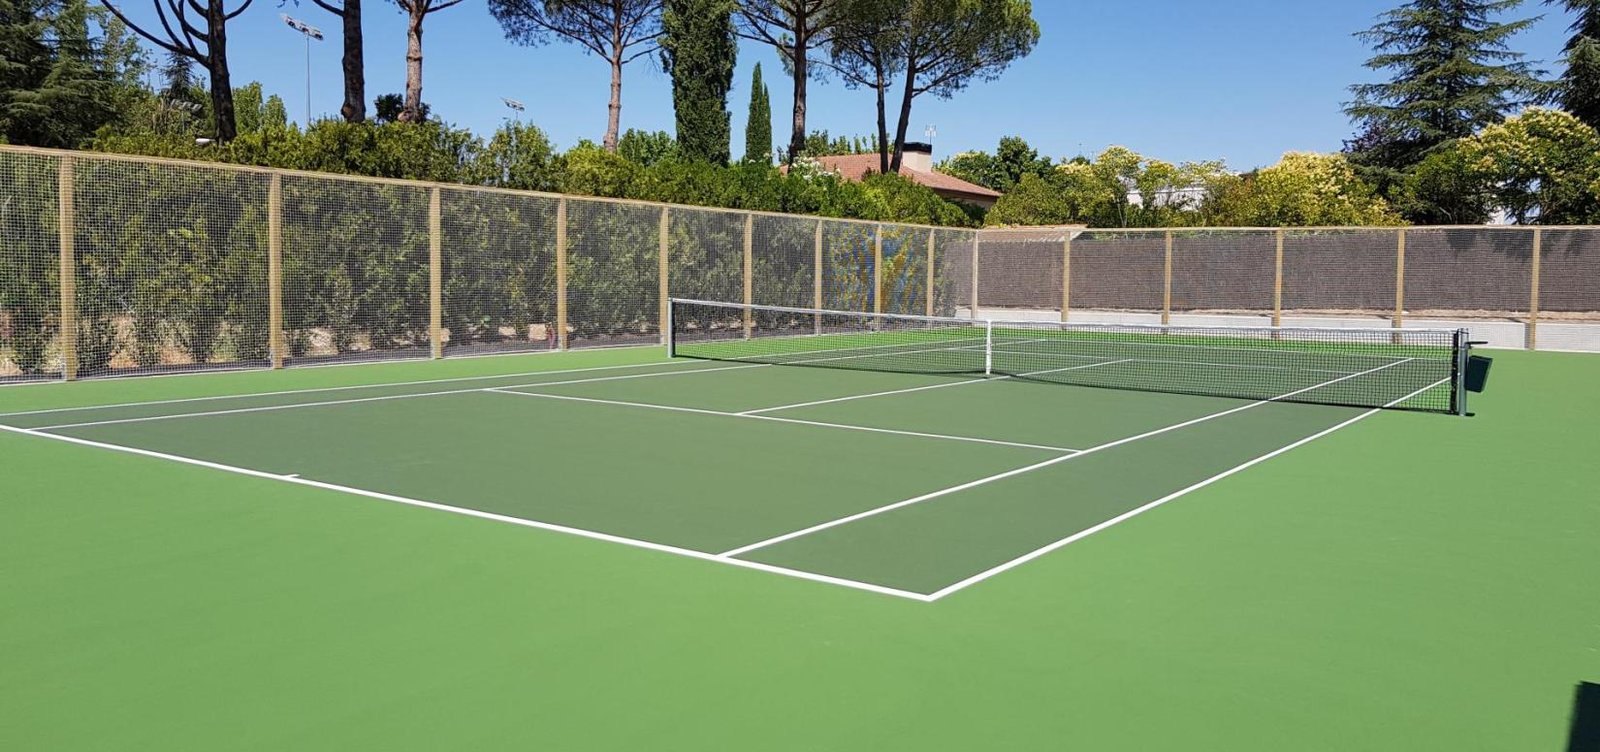 Instalacion de pista de tenis privada, Madrid